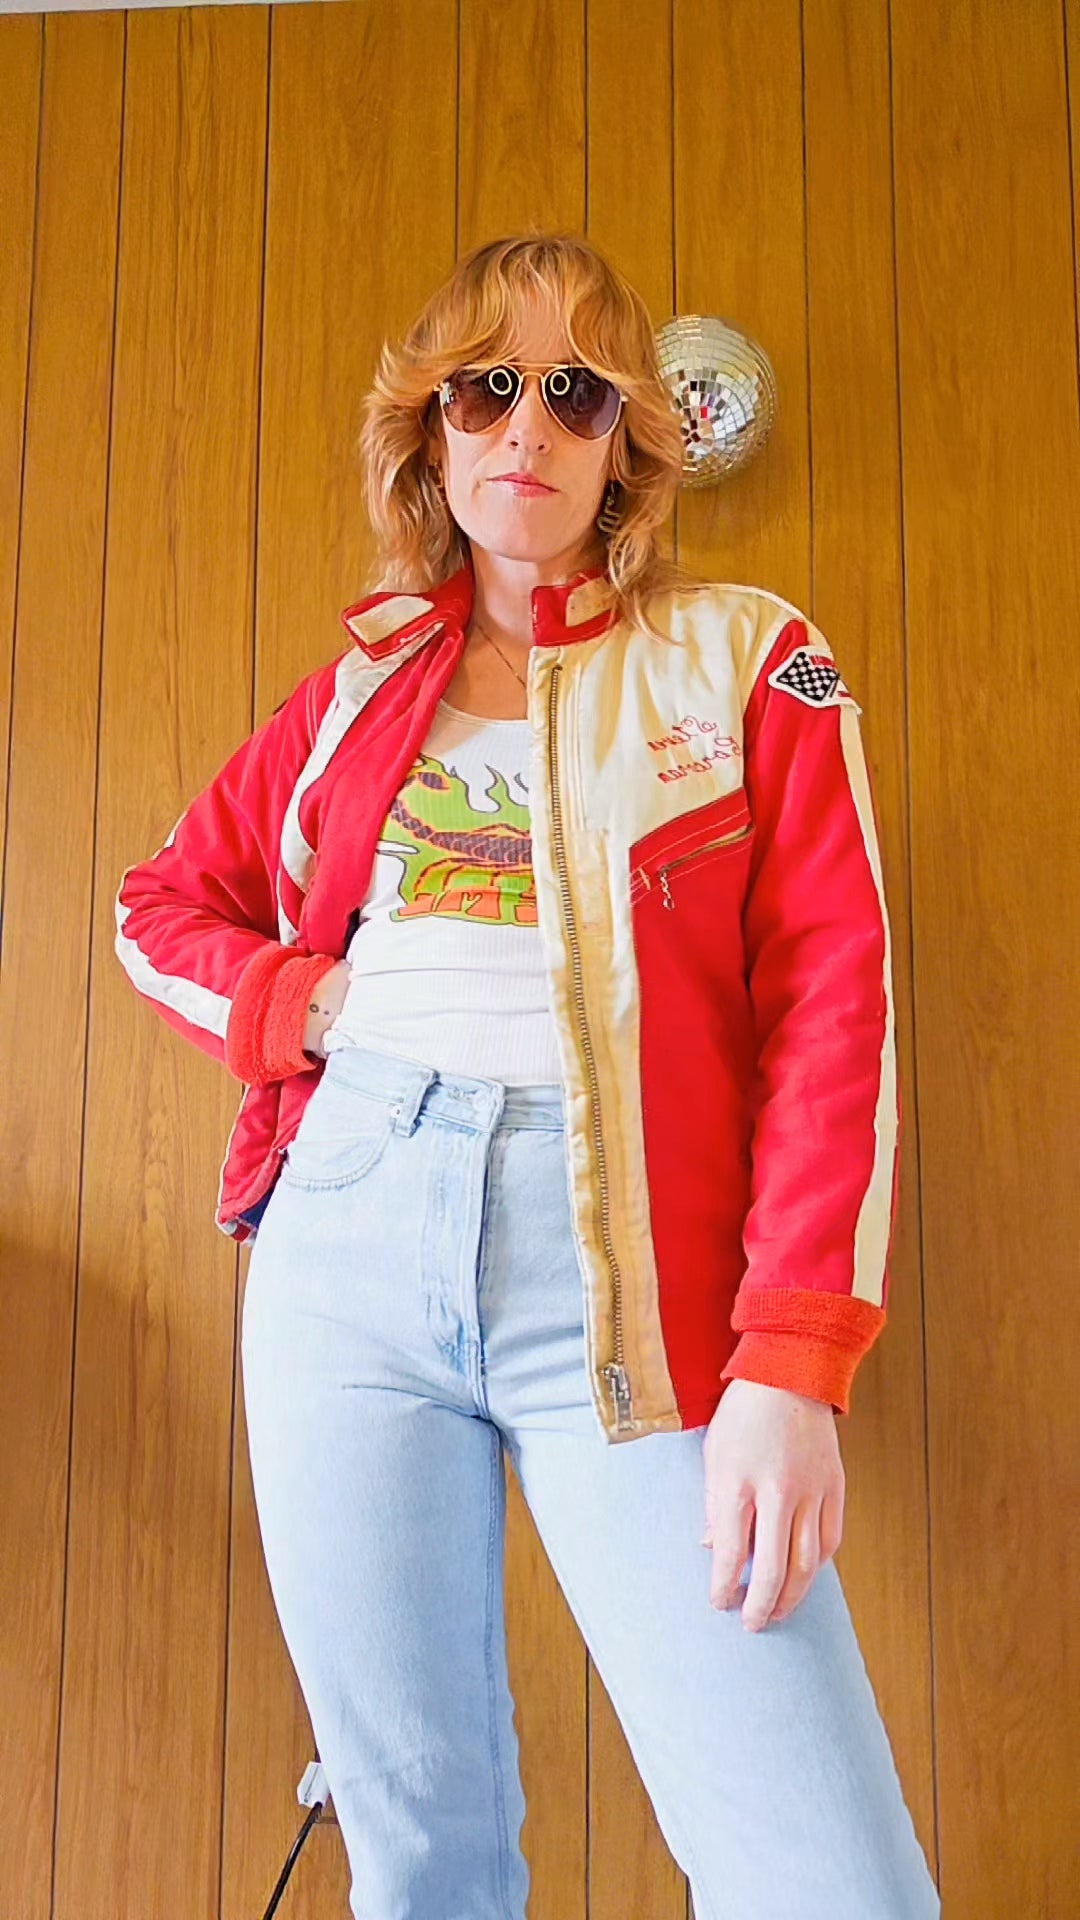 70s/80s Racing Jacket (S/M)